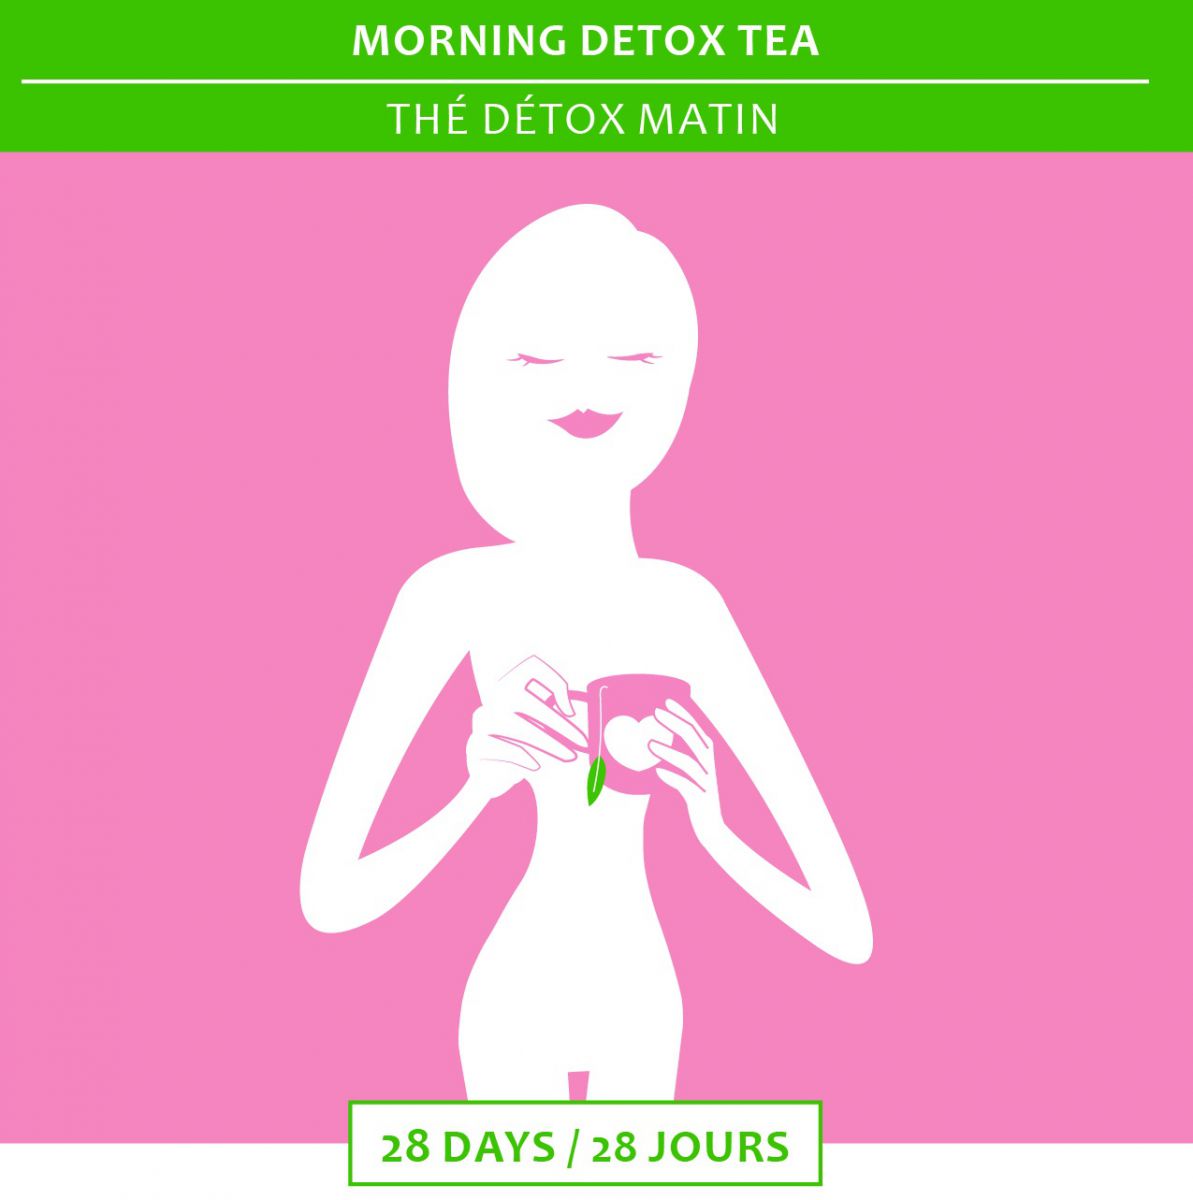 Thé Détox Minceur - Happy Detox Tea - 14 ou 28 jours